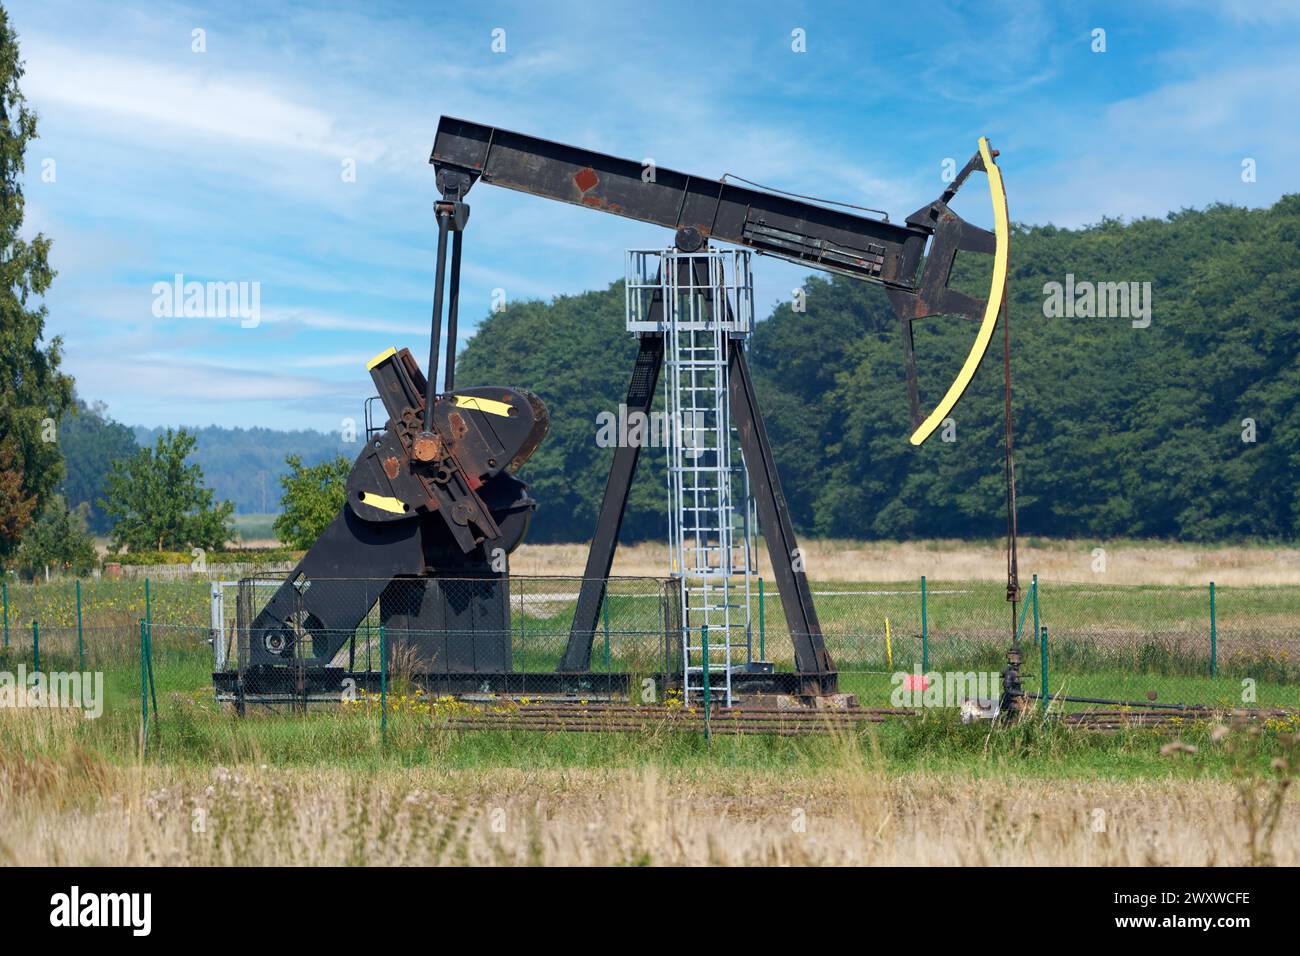 Pumpe zur Förderung von Rohöl - Insel Usedom, Deutschland Stockfoto